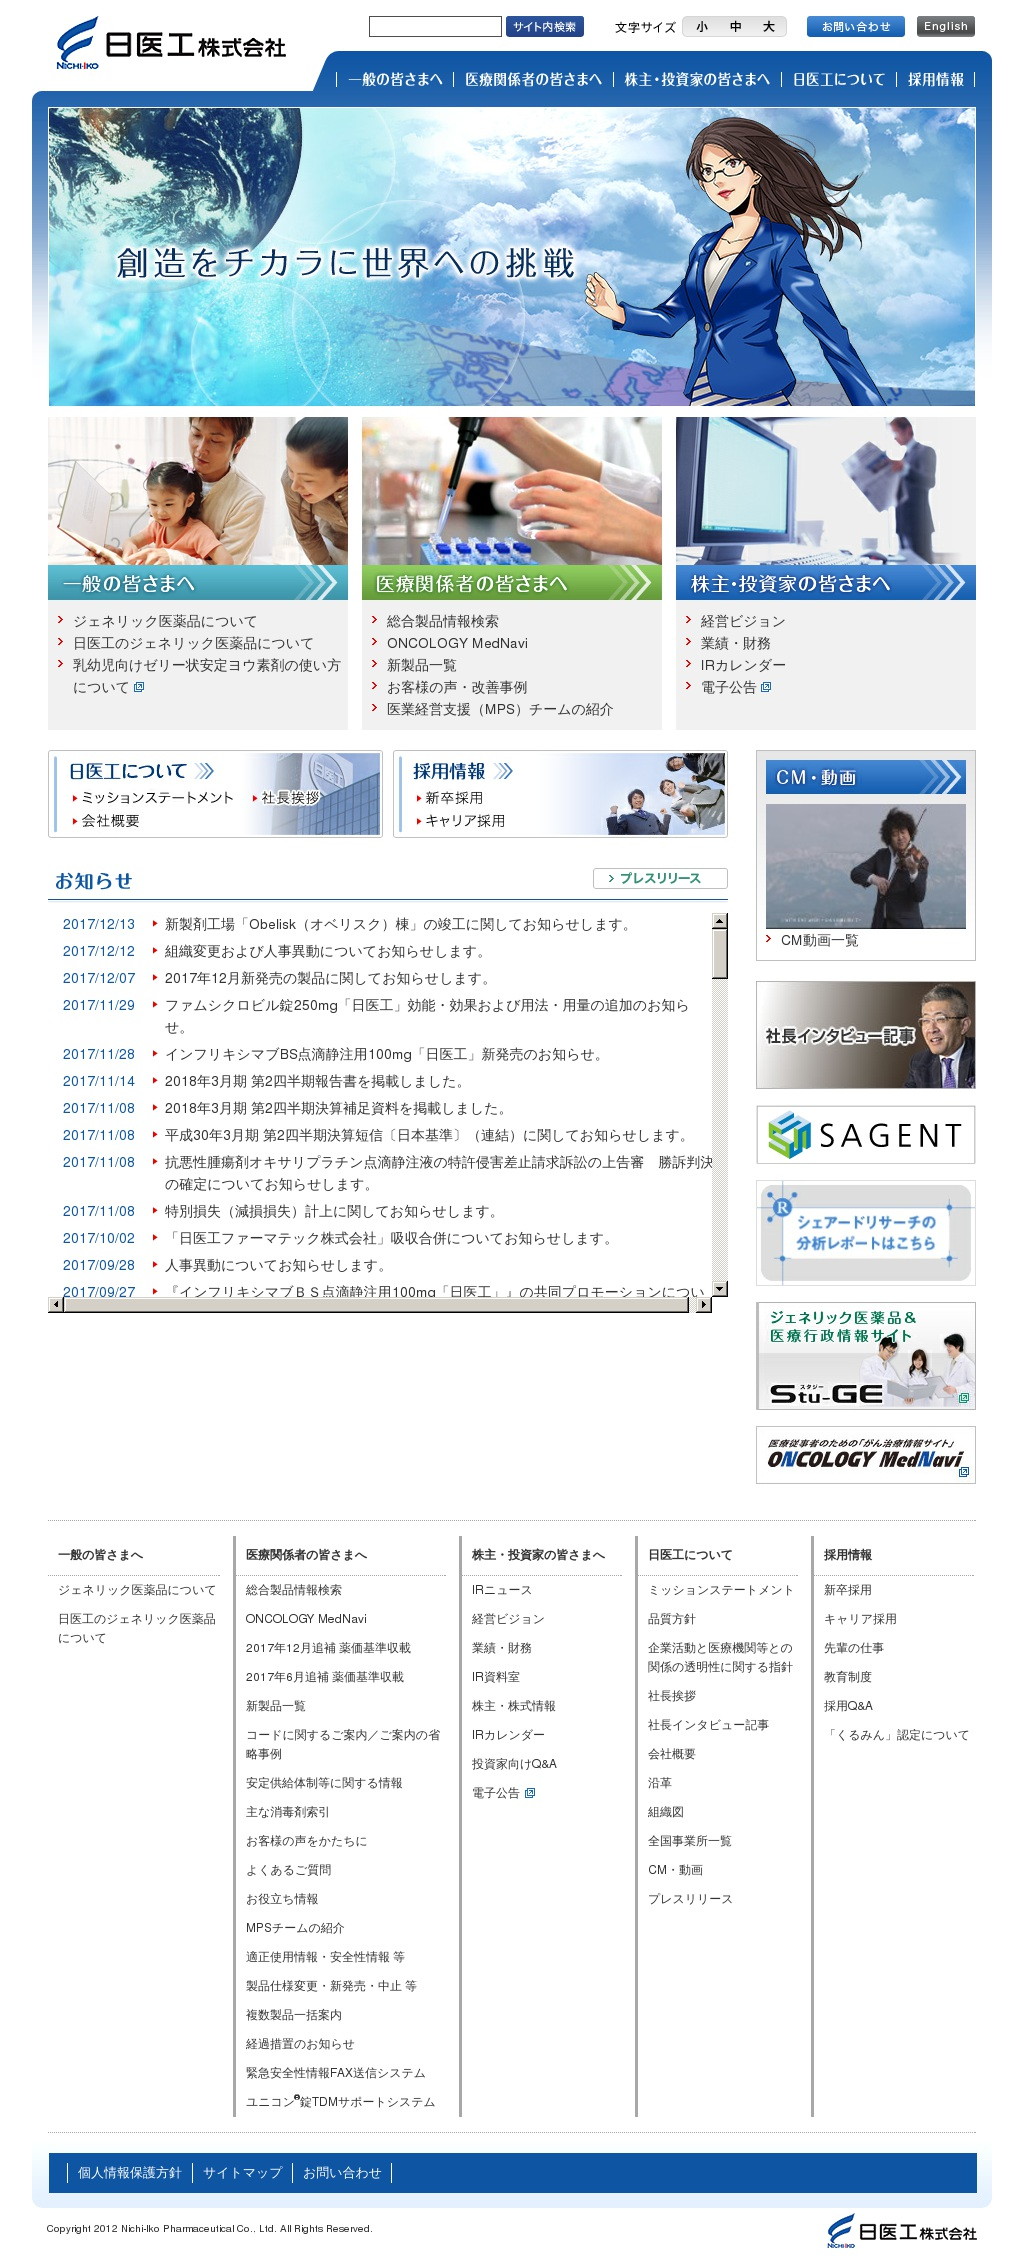 日医工のWebサイトのスクリーンショット